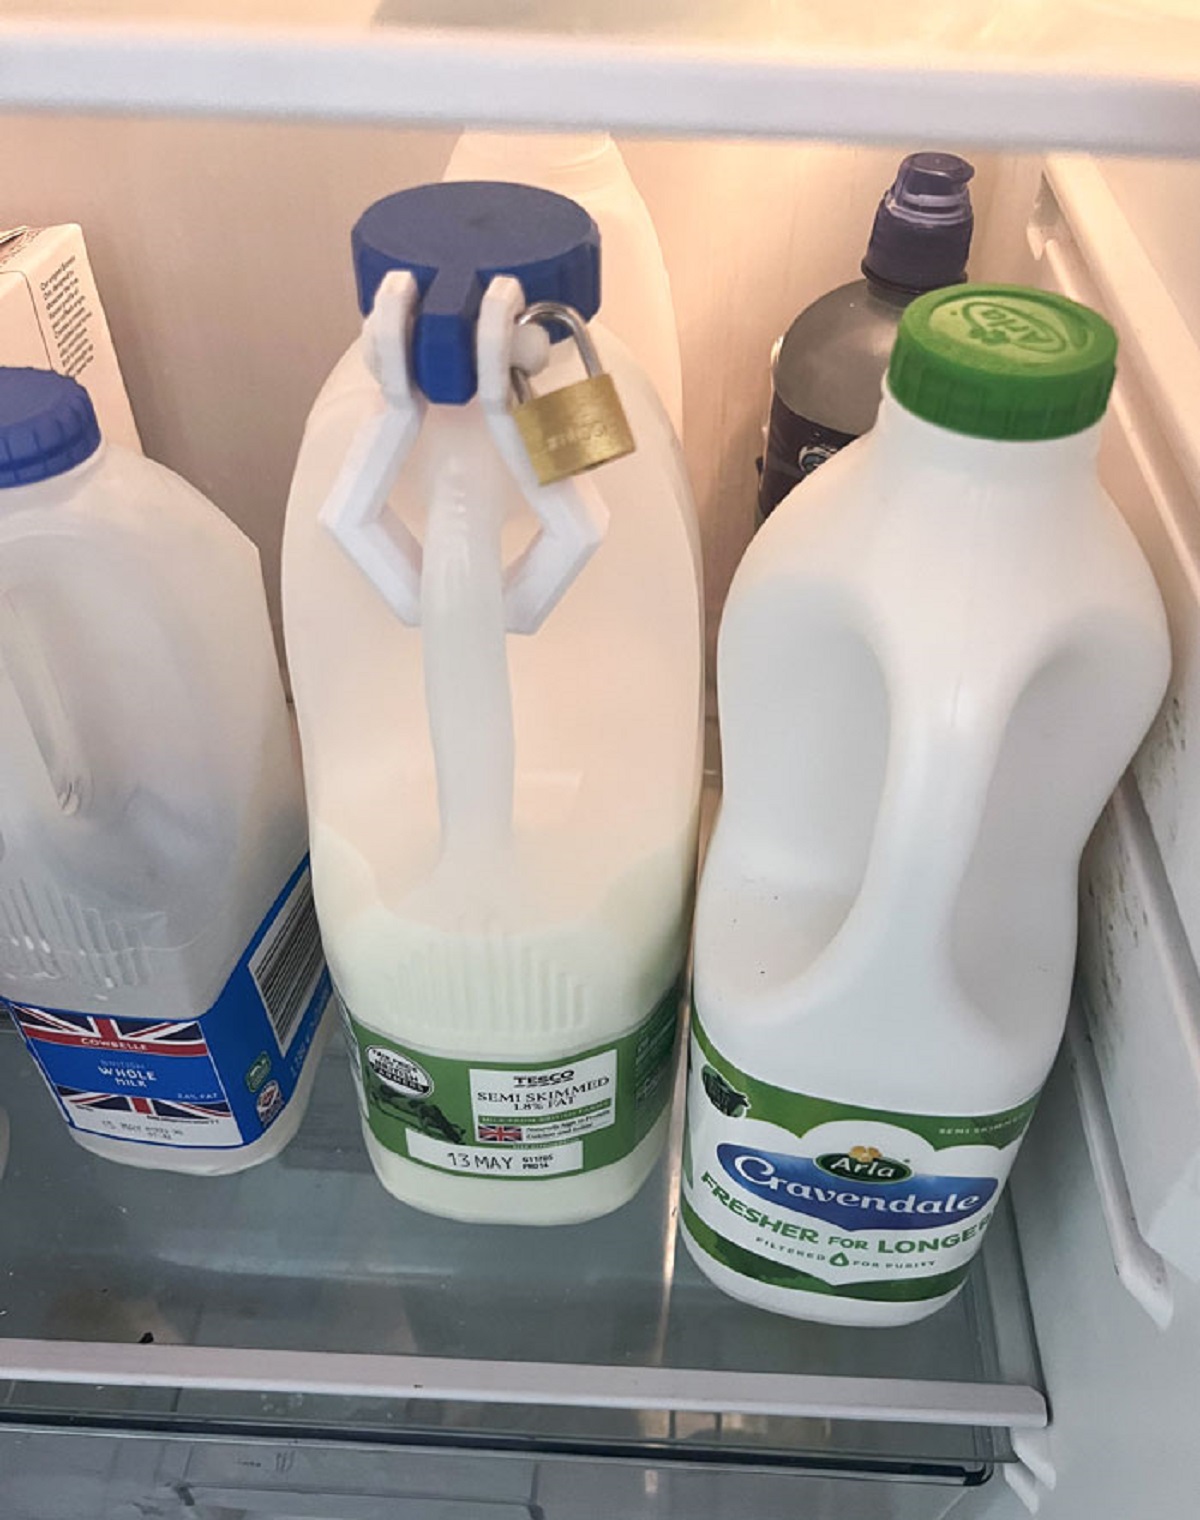 office milk lock - Cowselle Whole Tesco Semi Skimmed 13 May Arla Gravendale Fresher For Longer